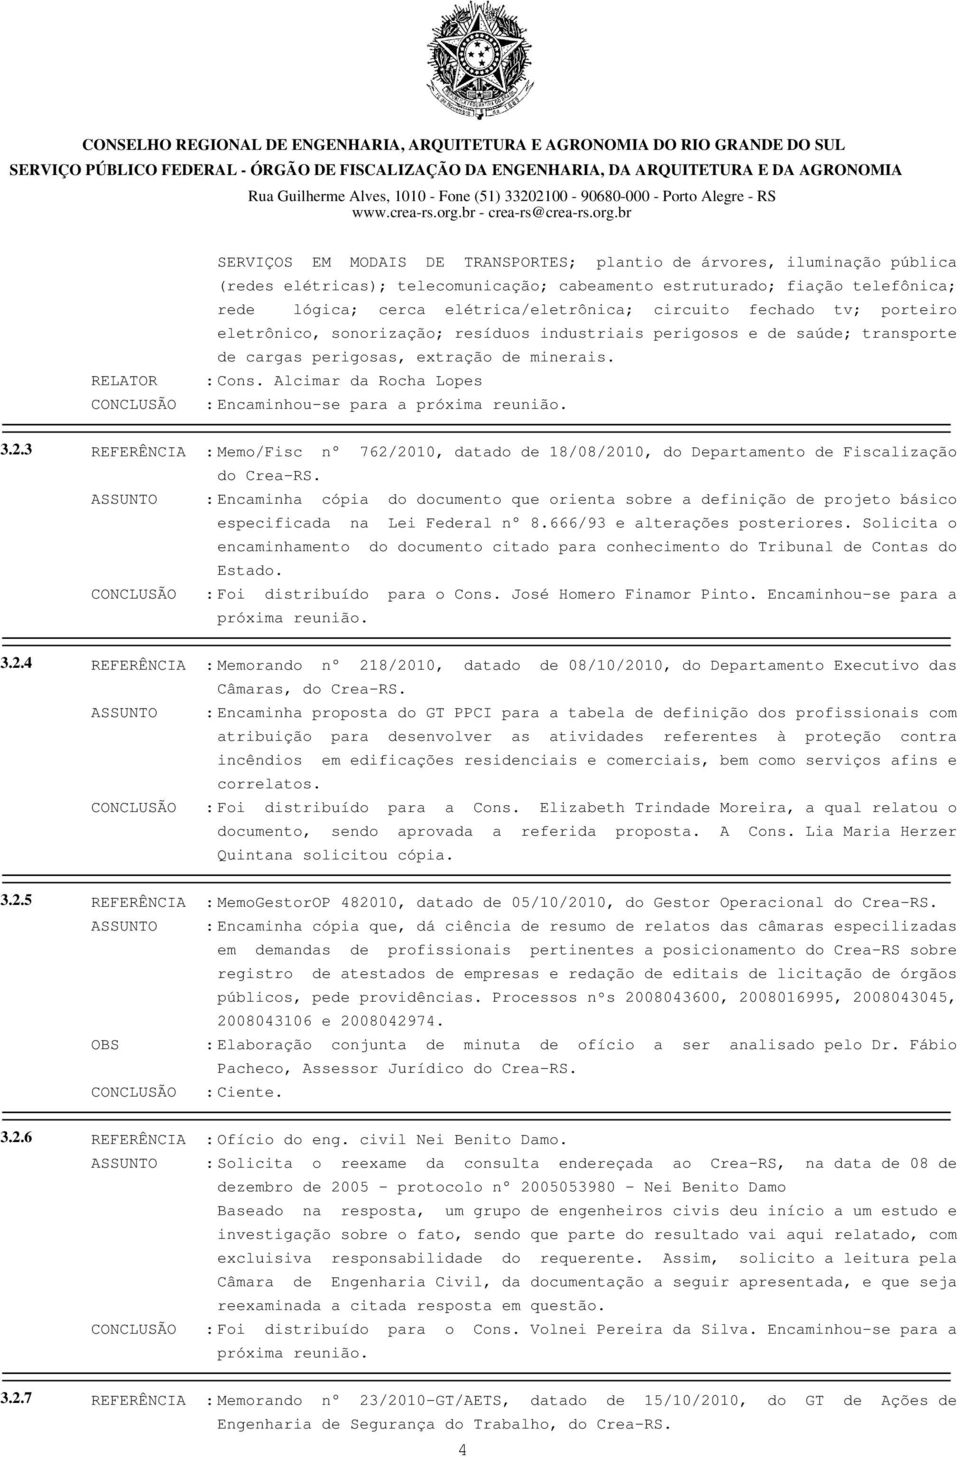 Alcimar da Rocha Lopes : Encaminhou-se para a próxima reunião. 3.2.3 REFERÊNCIA : Memo/Fisc n 762/2010, datado de 18/08/2010, do Departamento de Fiscalização do Crea-RS.